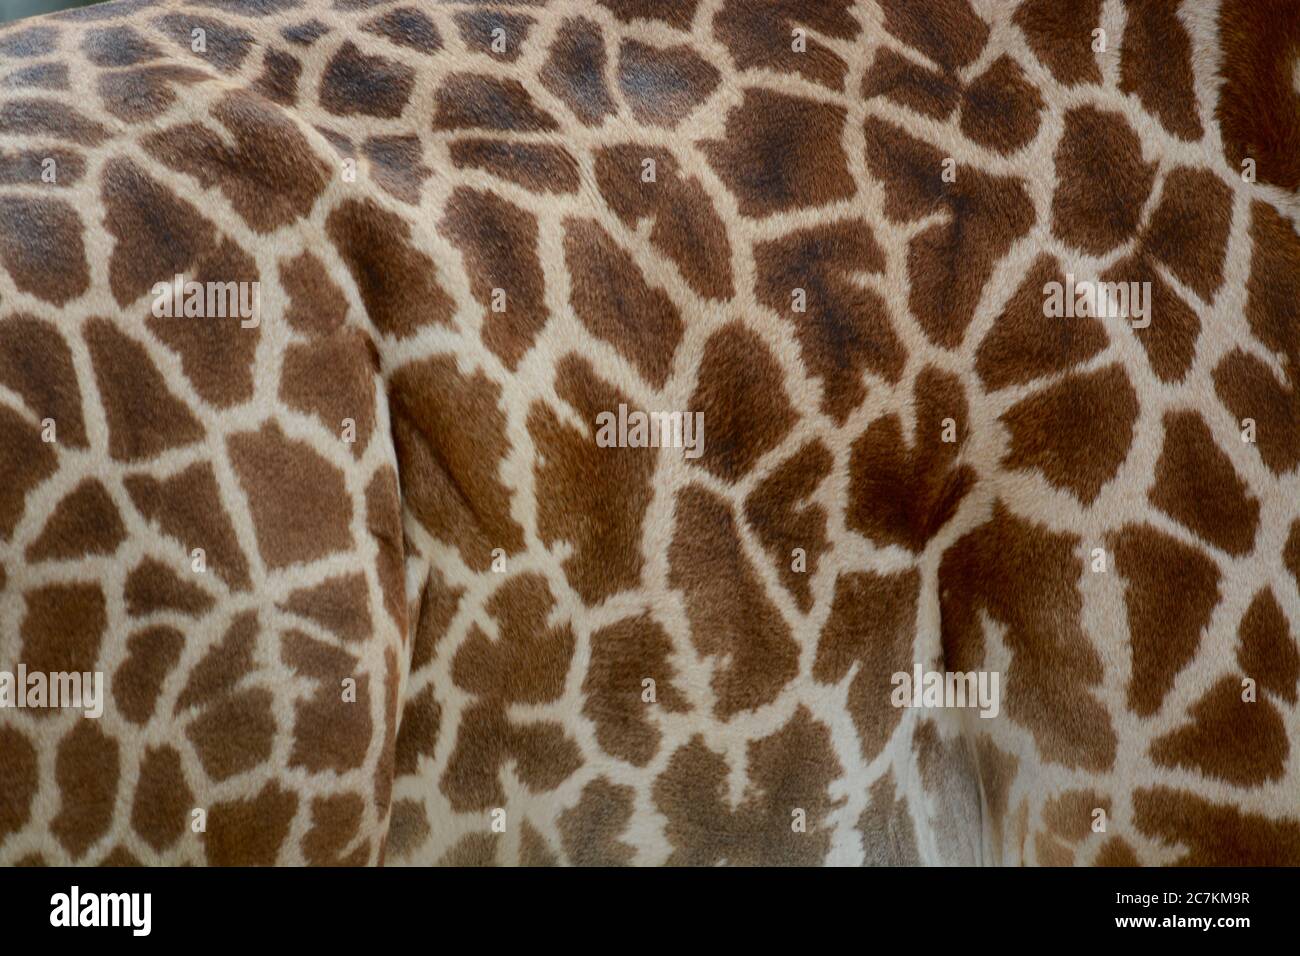 Foto von Giraffe-Punktmuster. Aufgenommen in Süd-Luangwa, Sambia Stockfoto